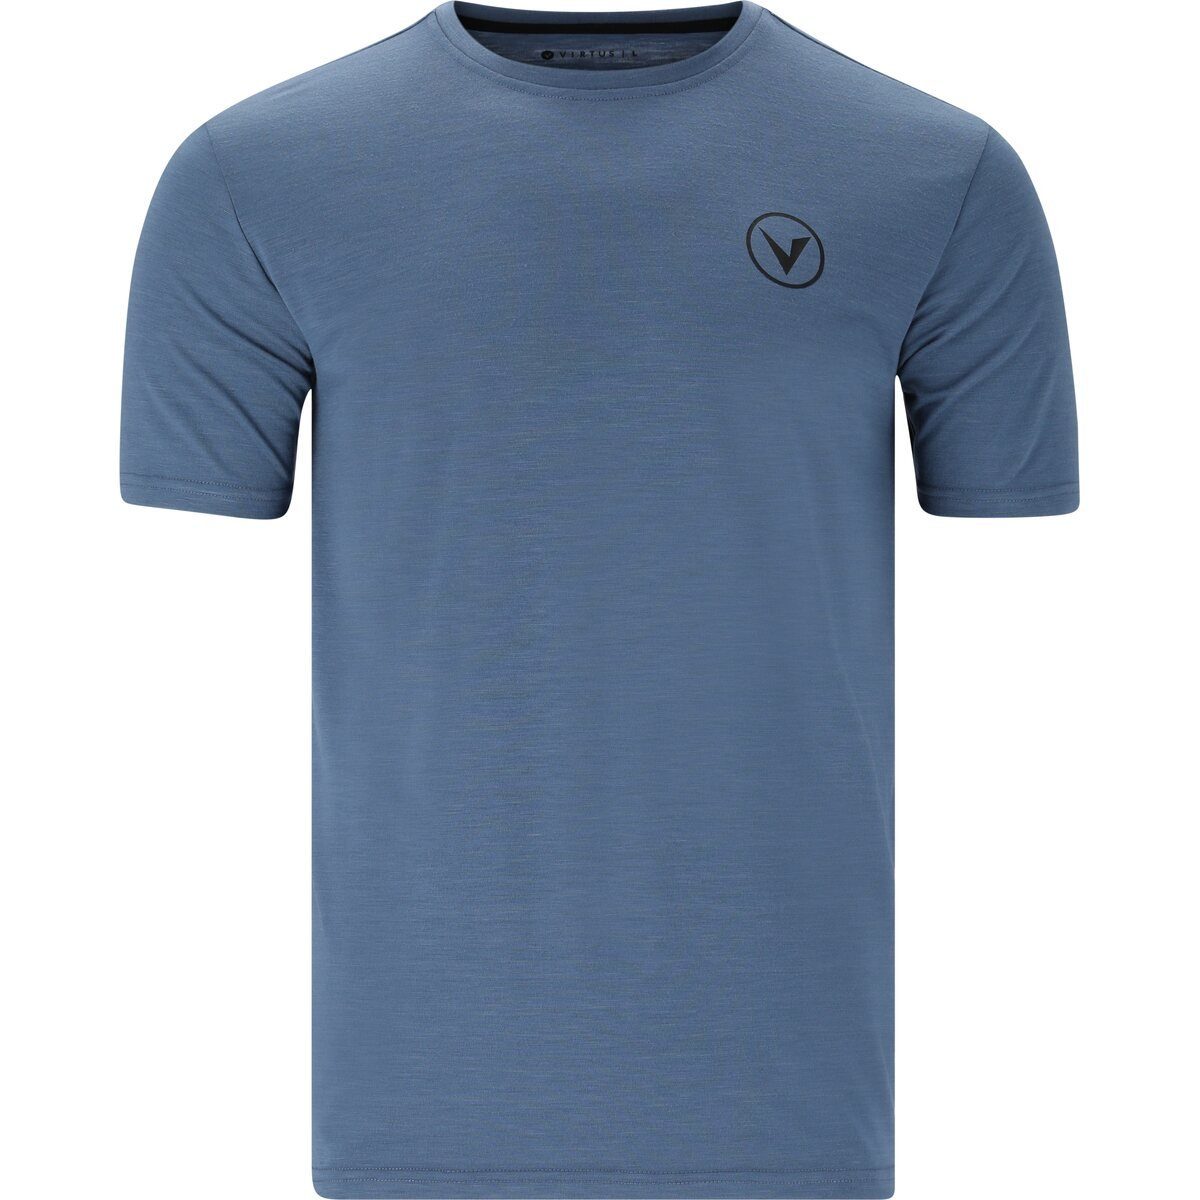 Virtus T-Shirt Joker blue bering sea